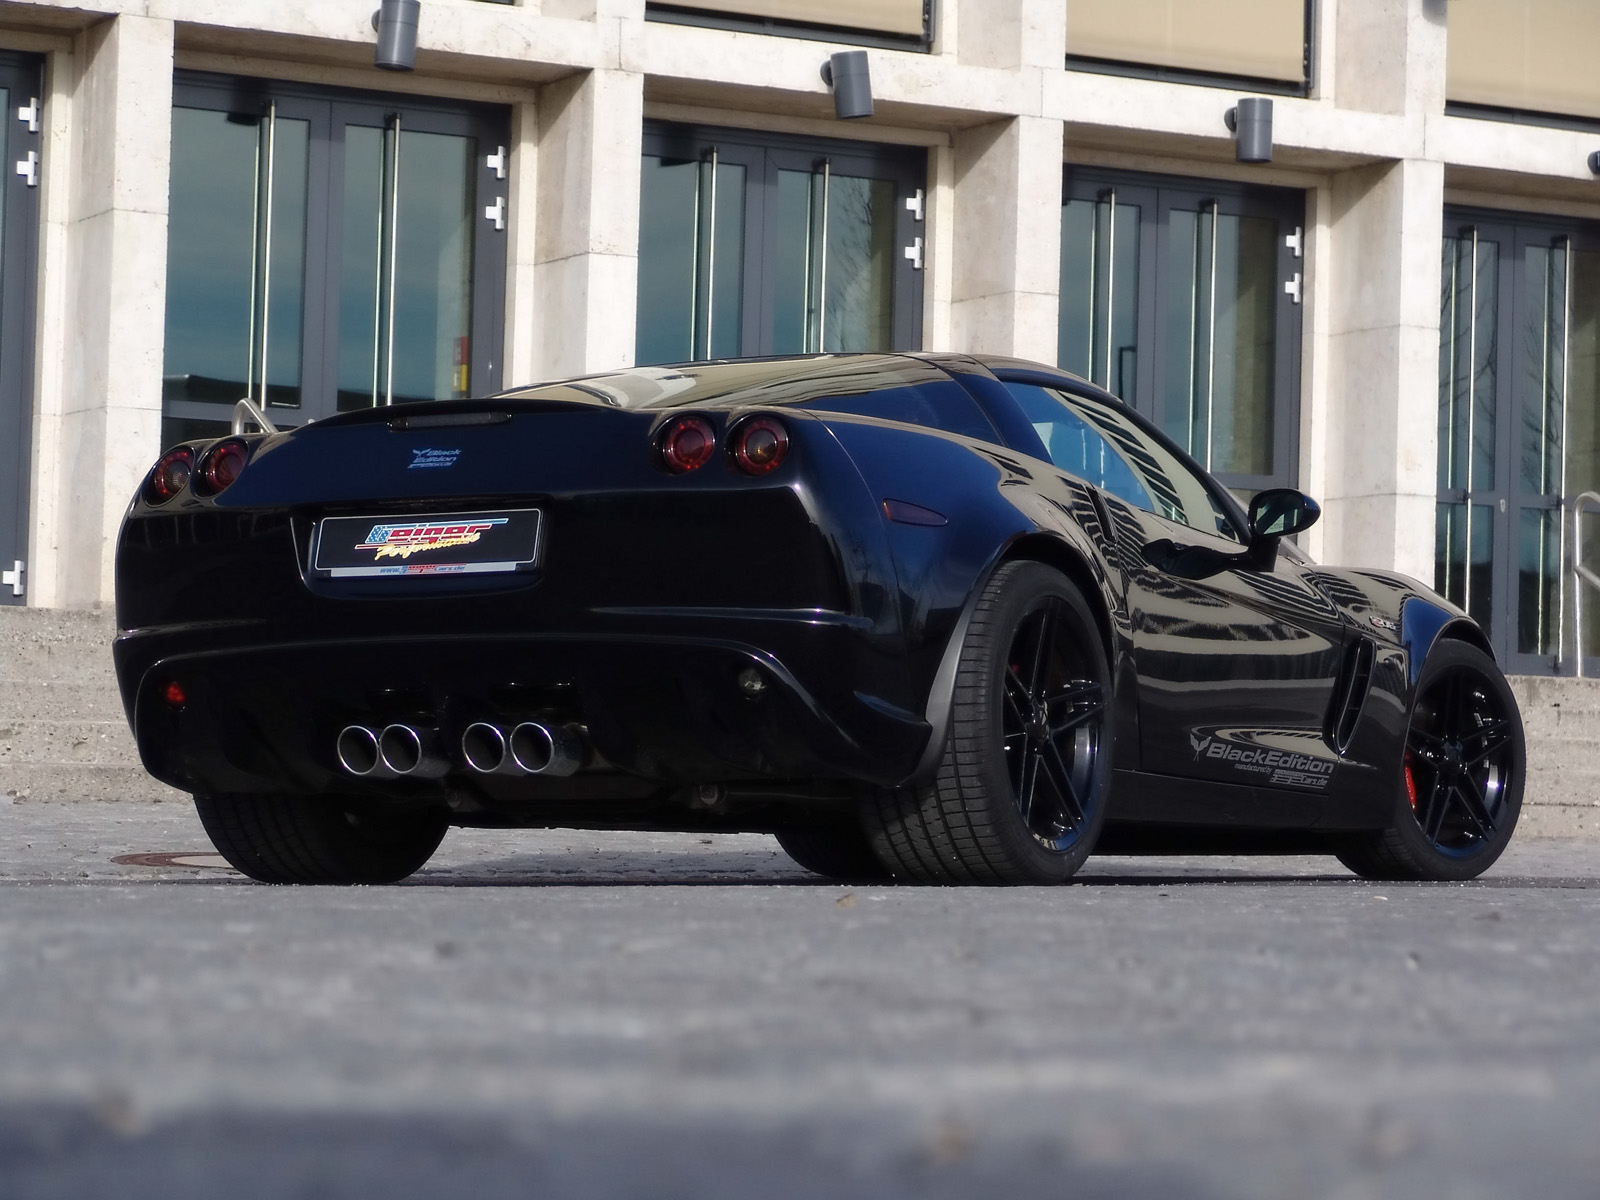 Geigercars Corvette Z06 Black Edition Picture